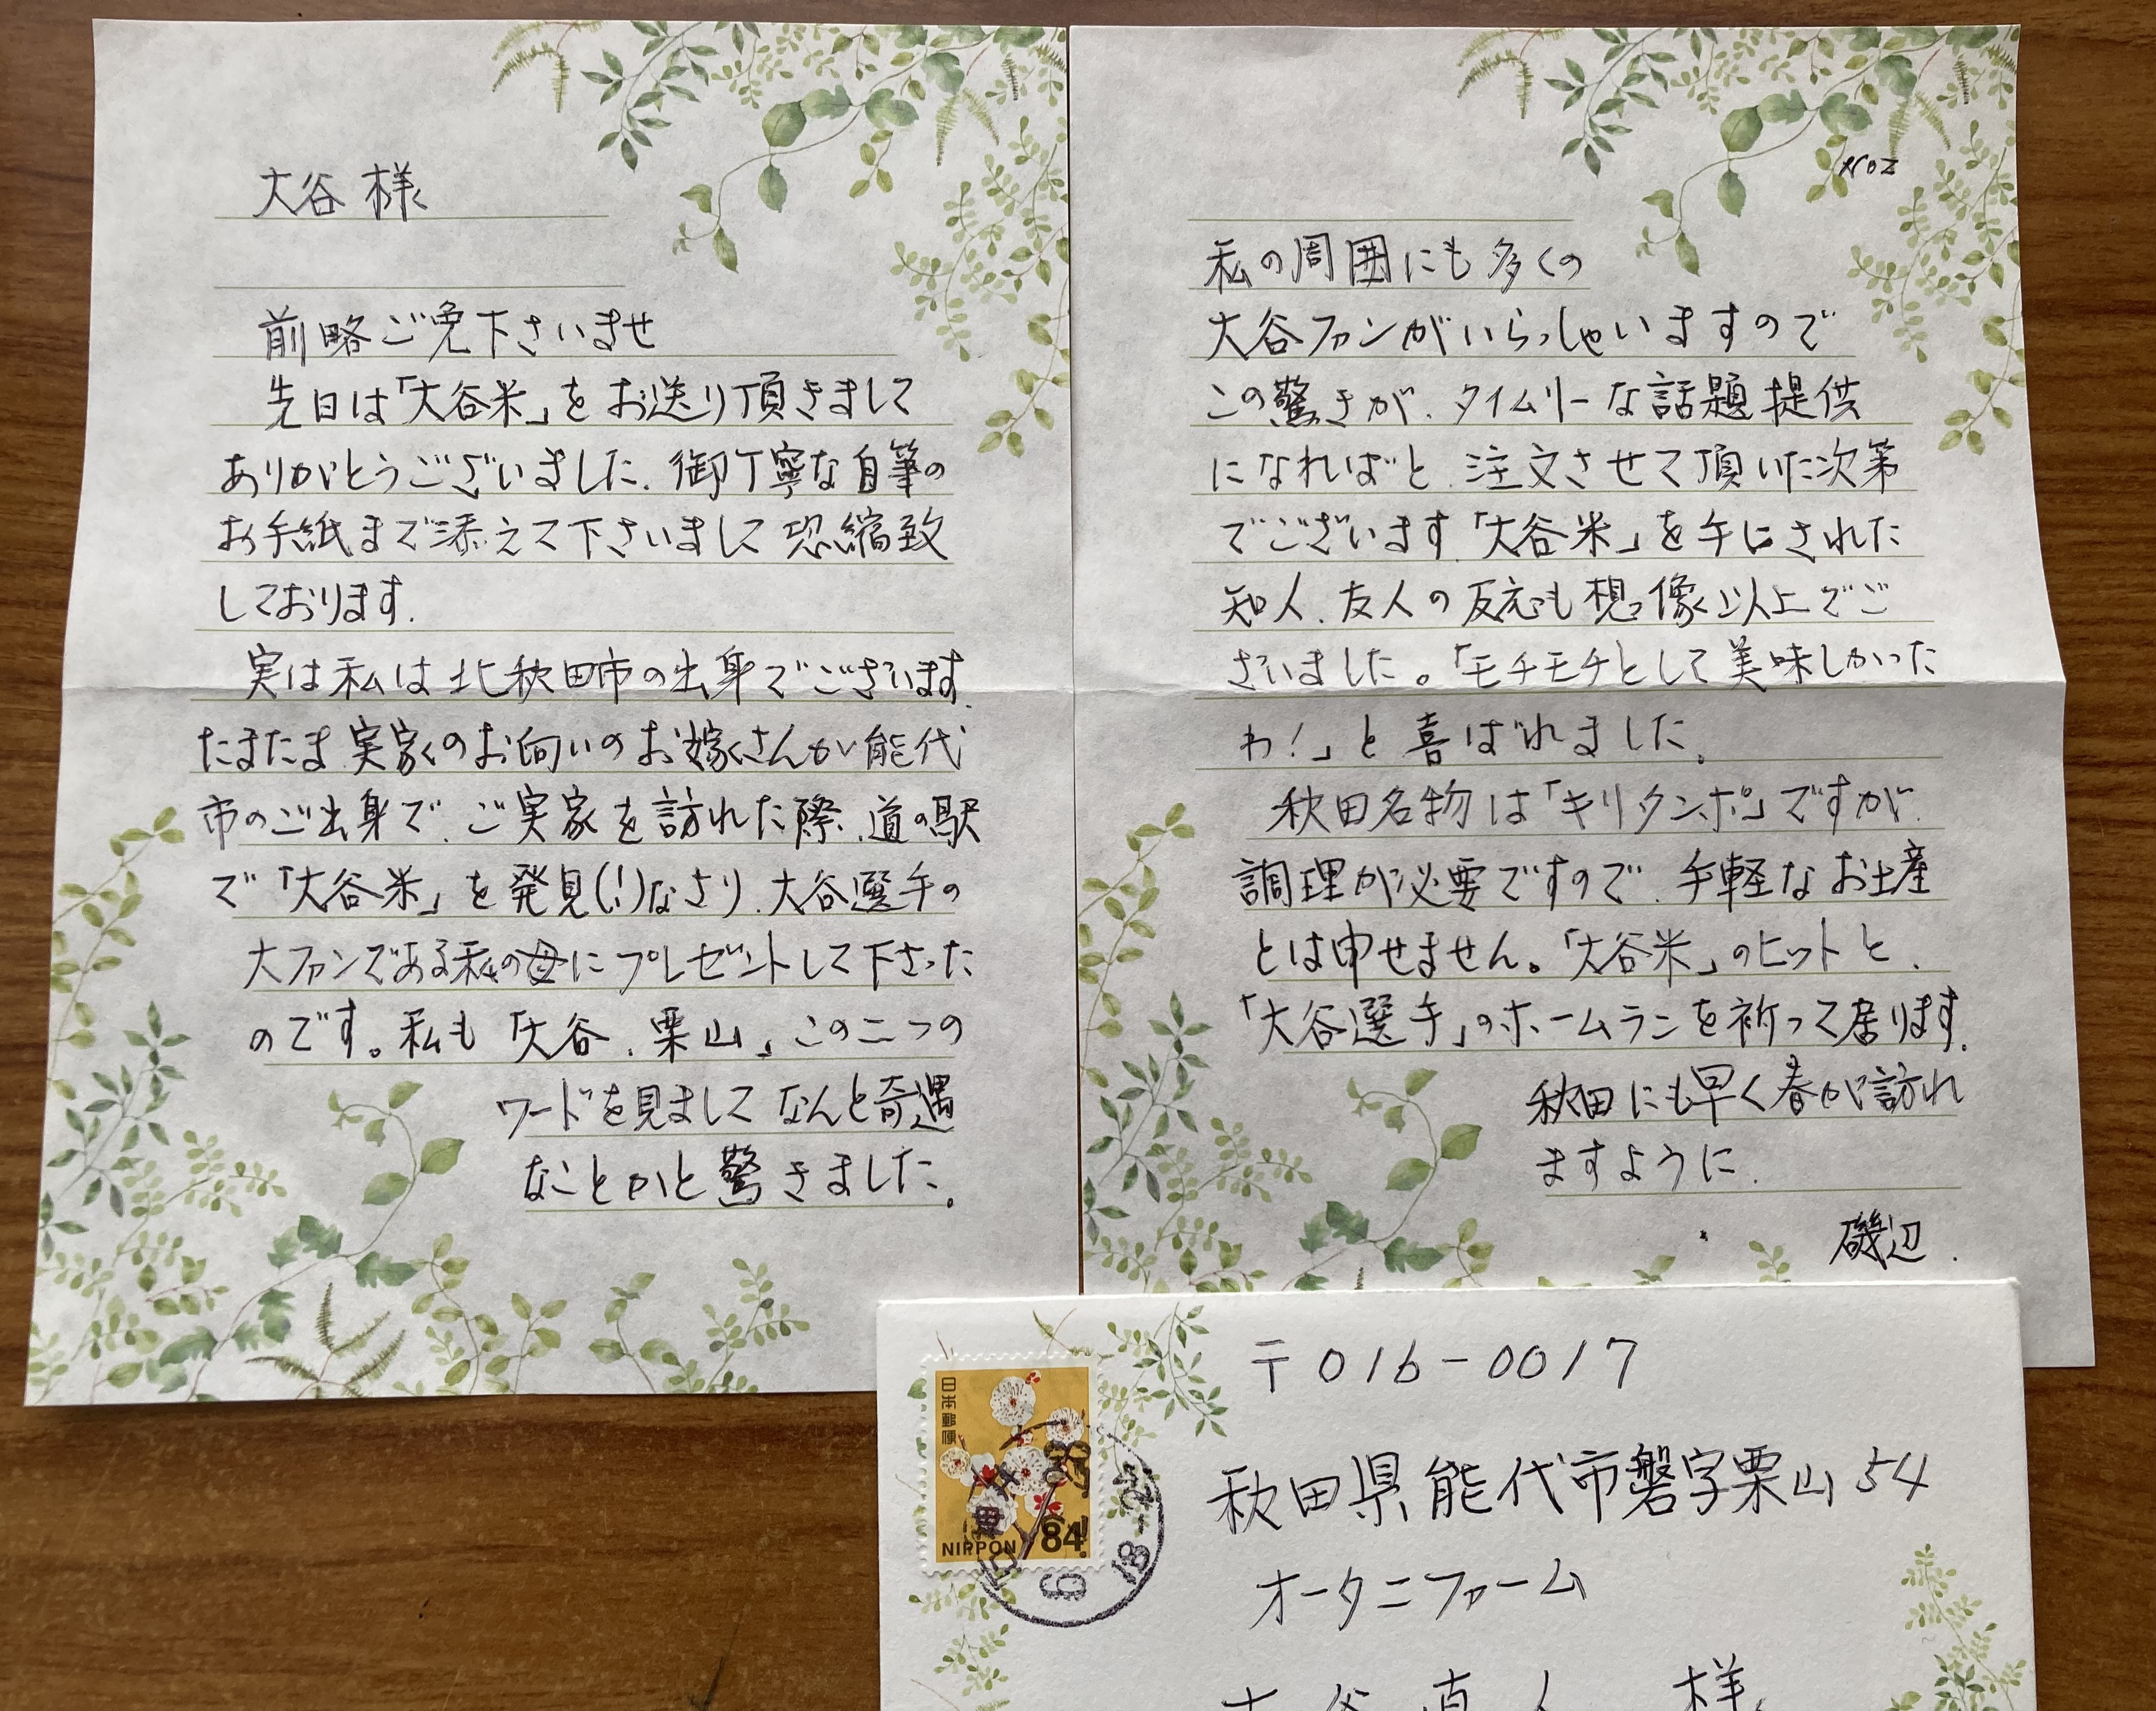 うれしいお手紙をいただきました。